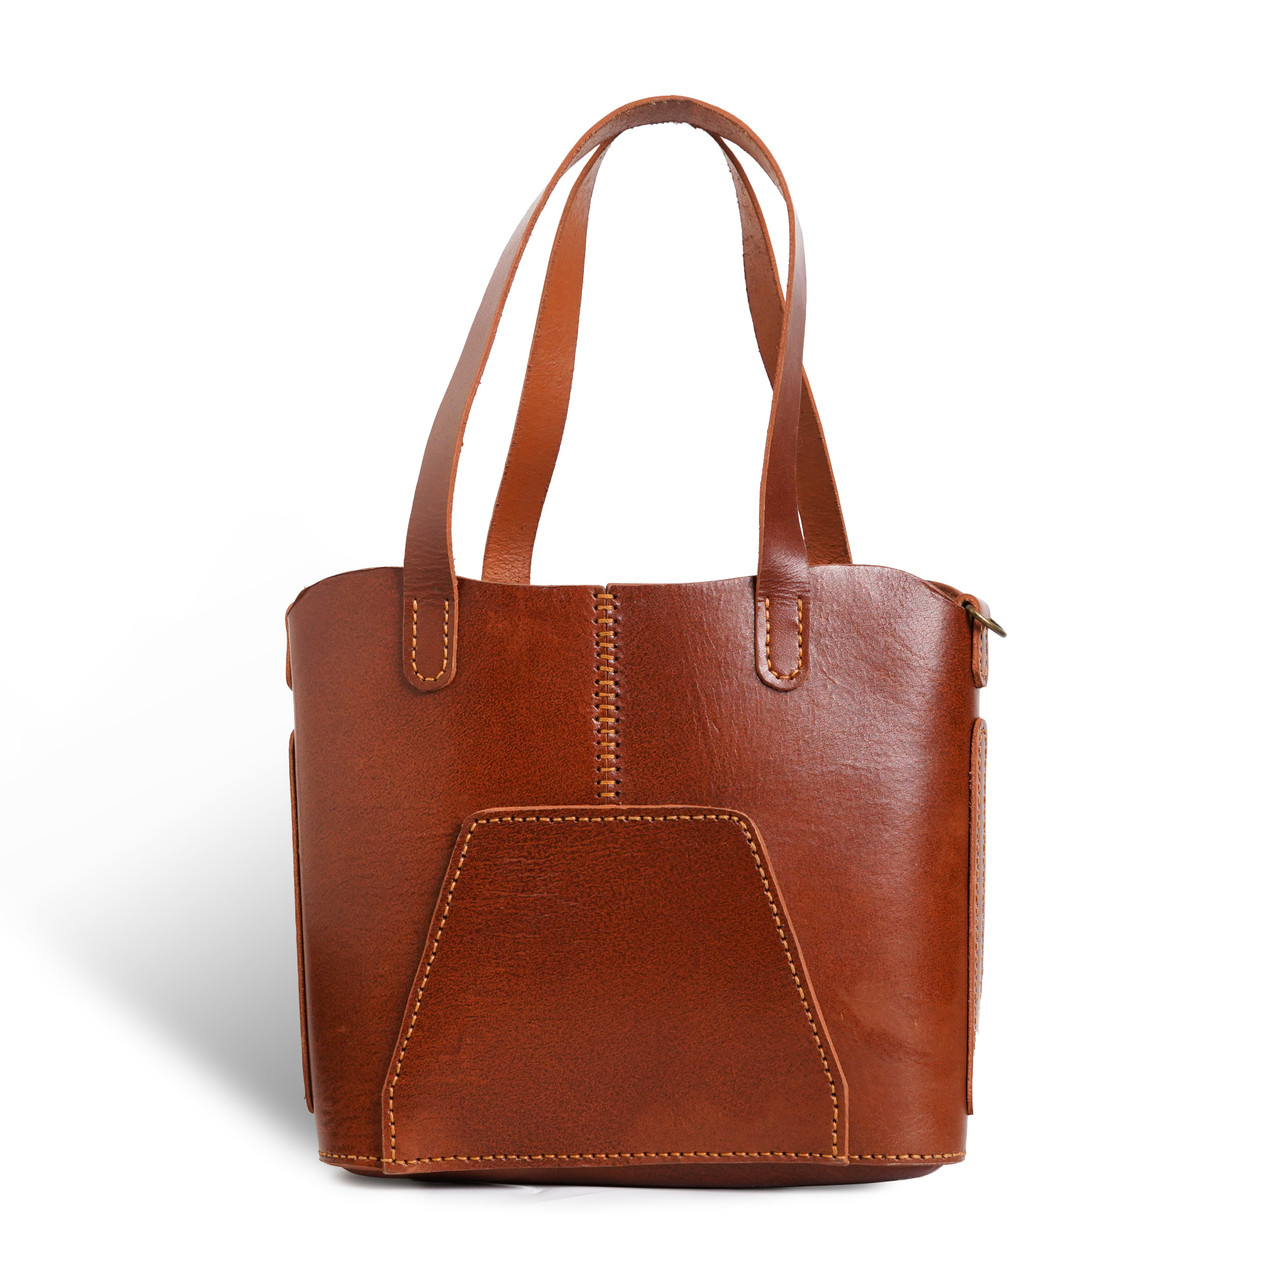 Designer Tote Bag Luxury Shoulder Bag Handbag Genuine Leather New